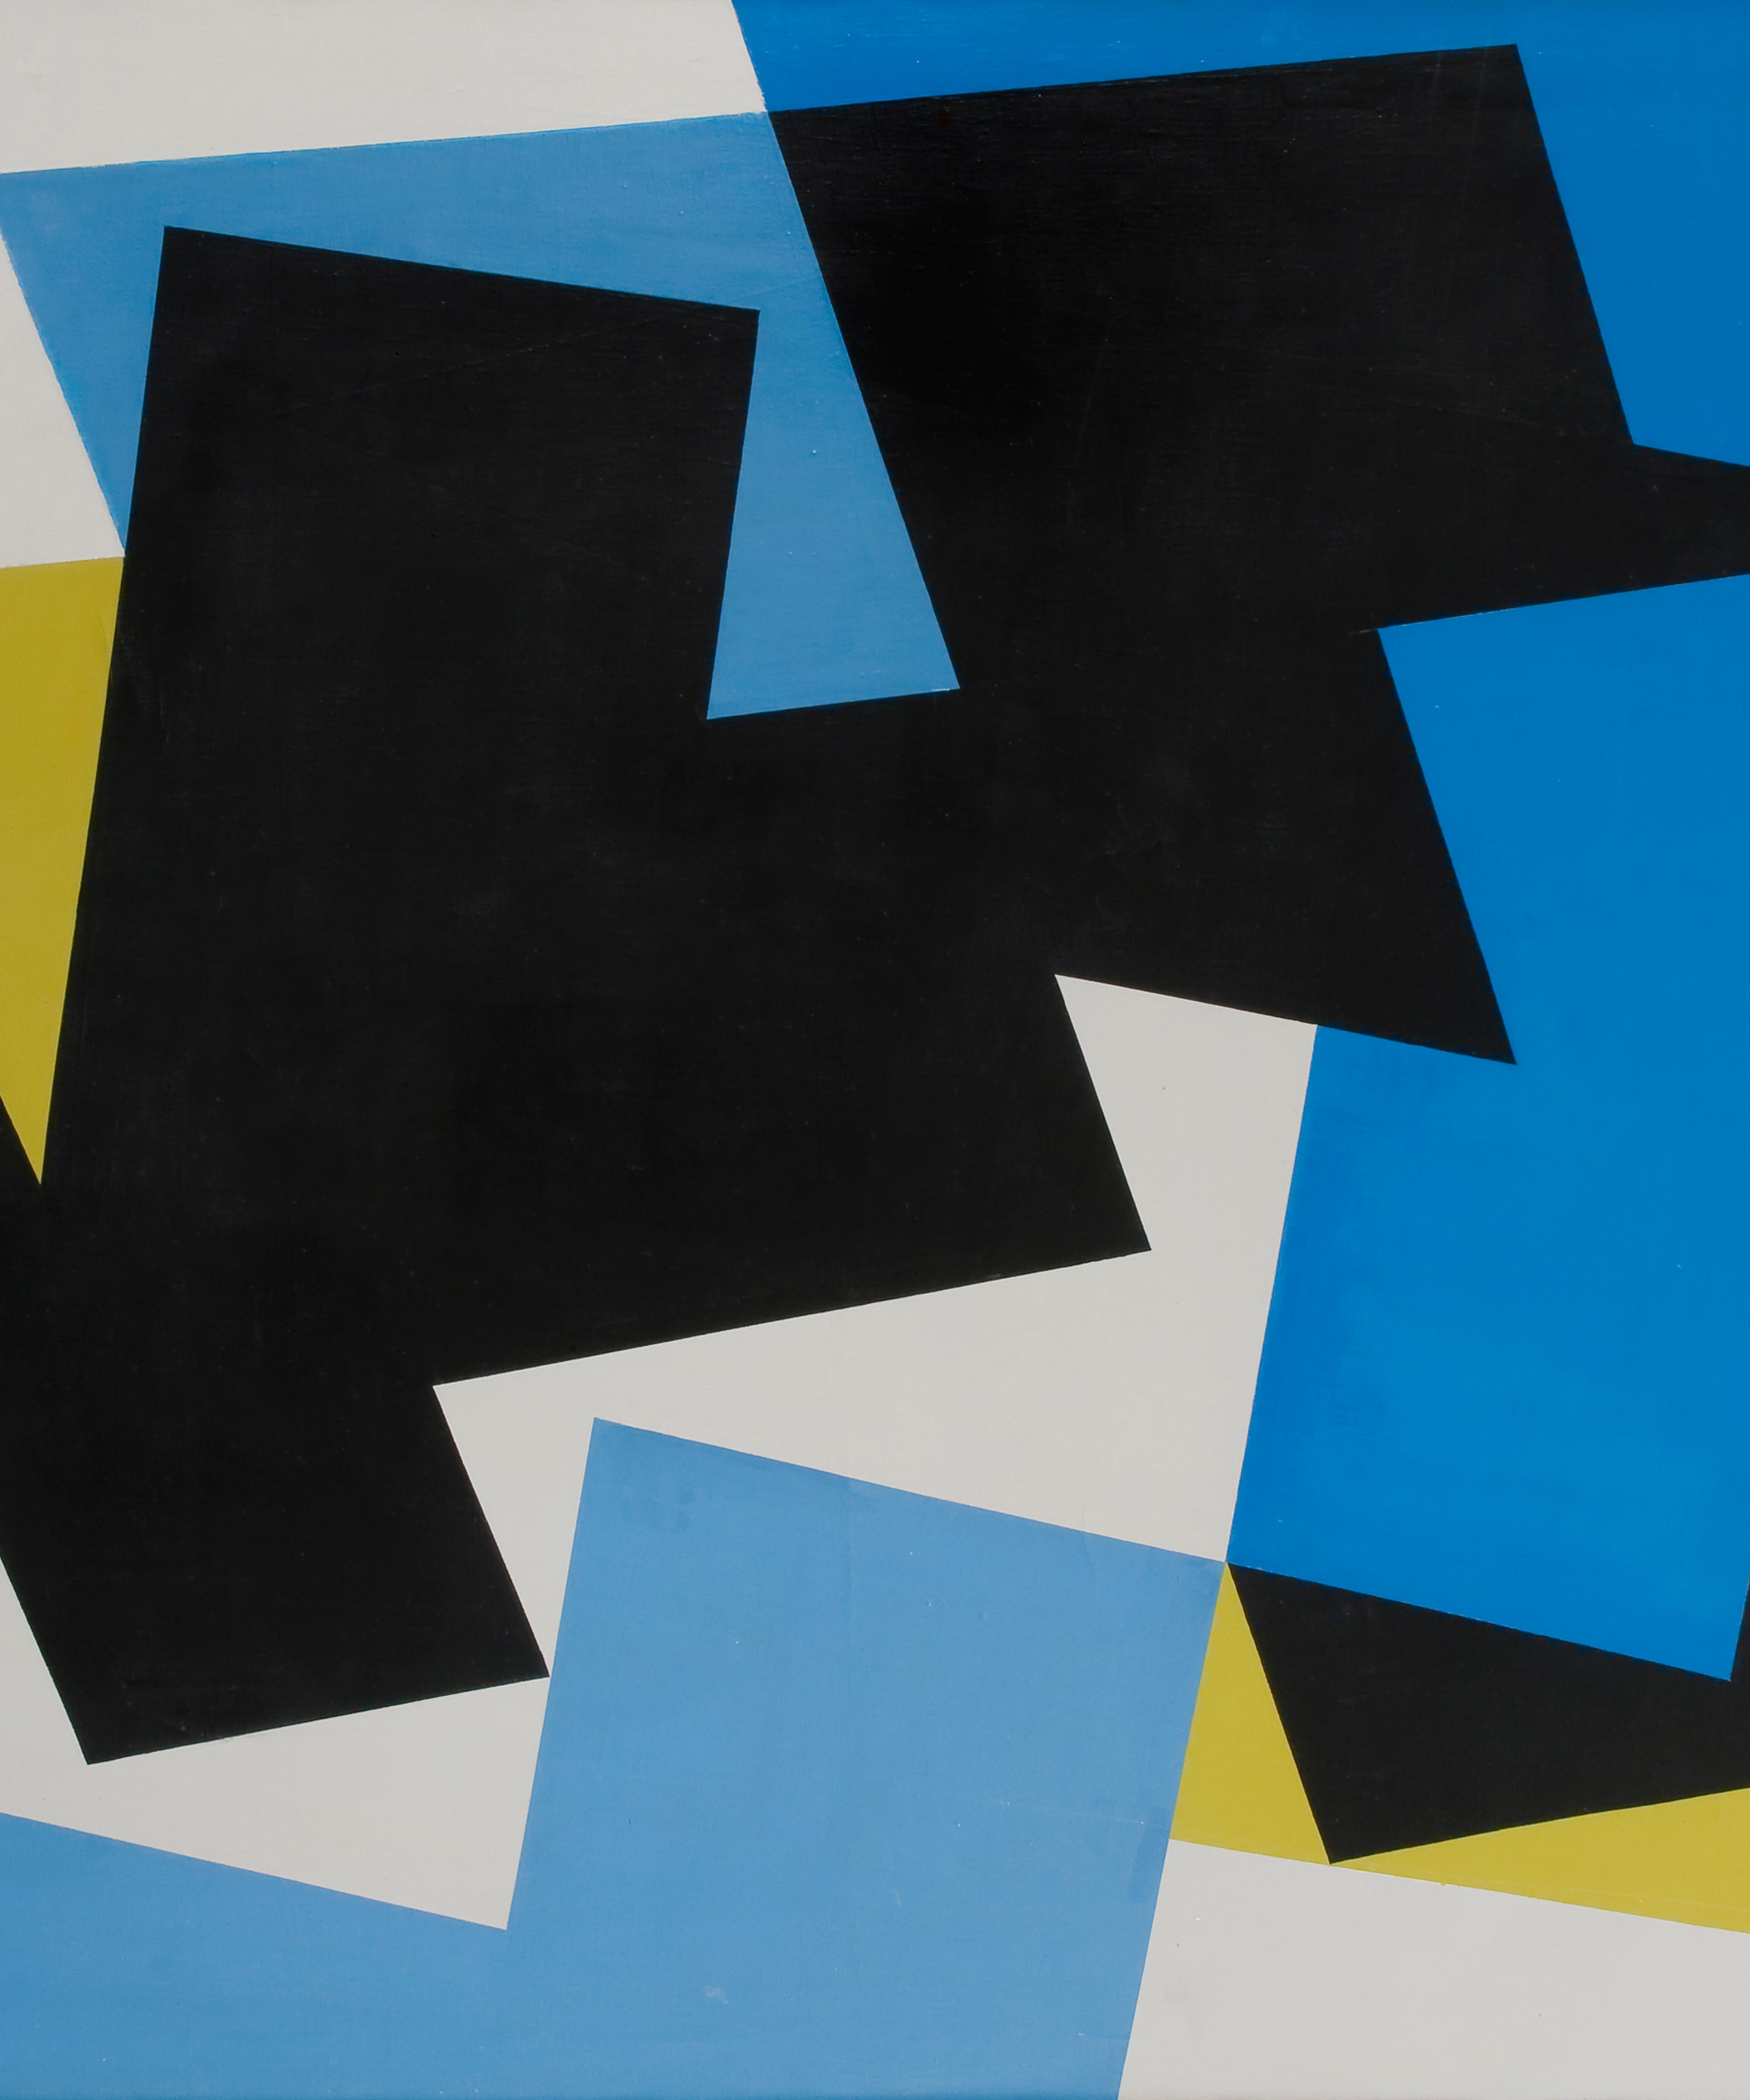 Et abstrakt verk i hvitt, turkis, sort og gult, i firkantete former